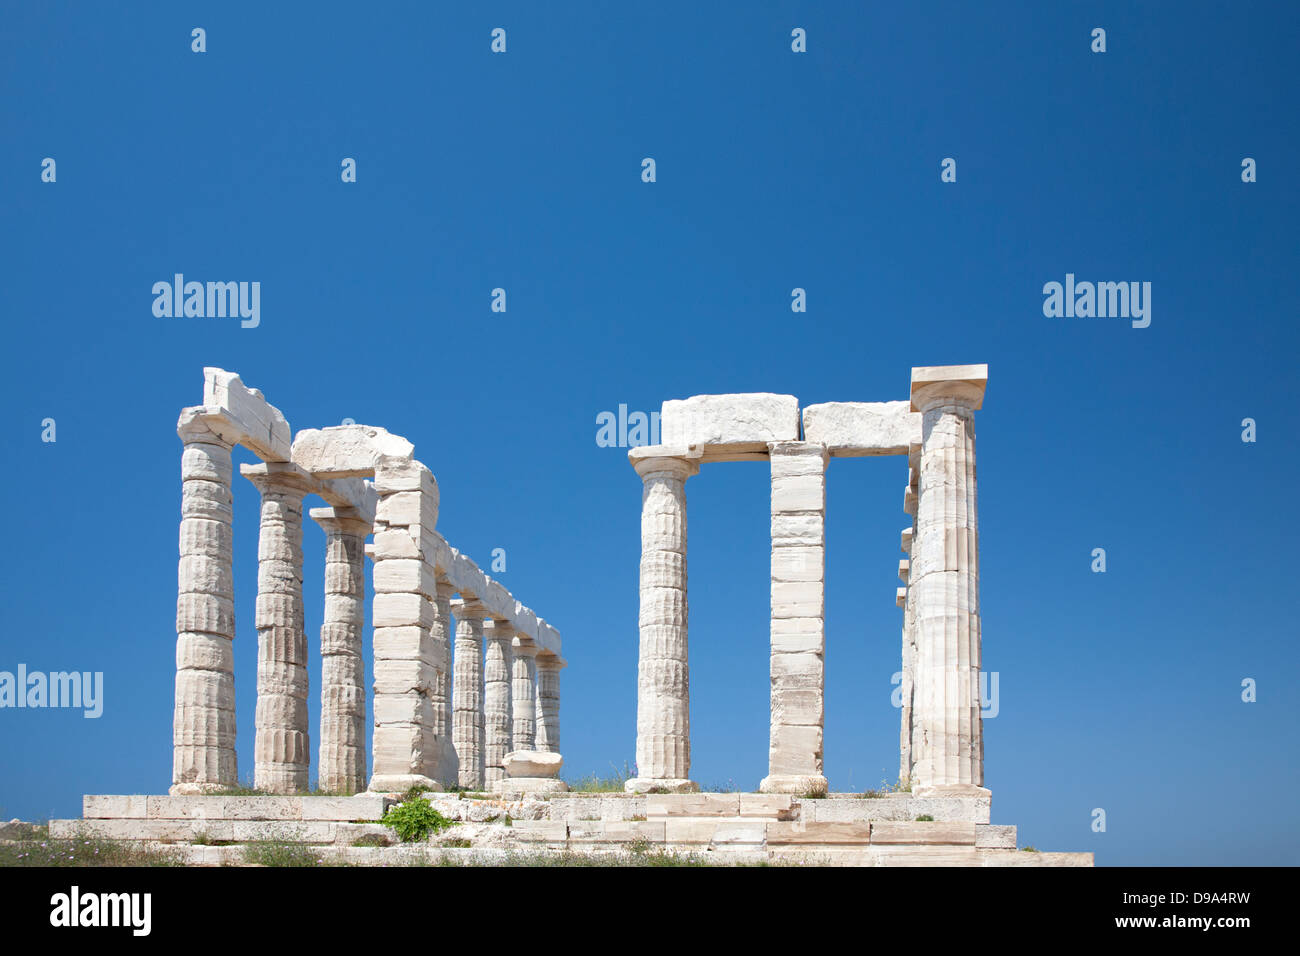 Temple de Poséidon en Grèce, un ancien sanctuaire religieux grec construit à la pointe de la péninsule Attique à partir de marbre blanc local Banque D'Images